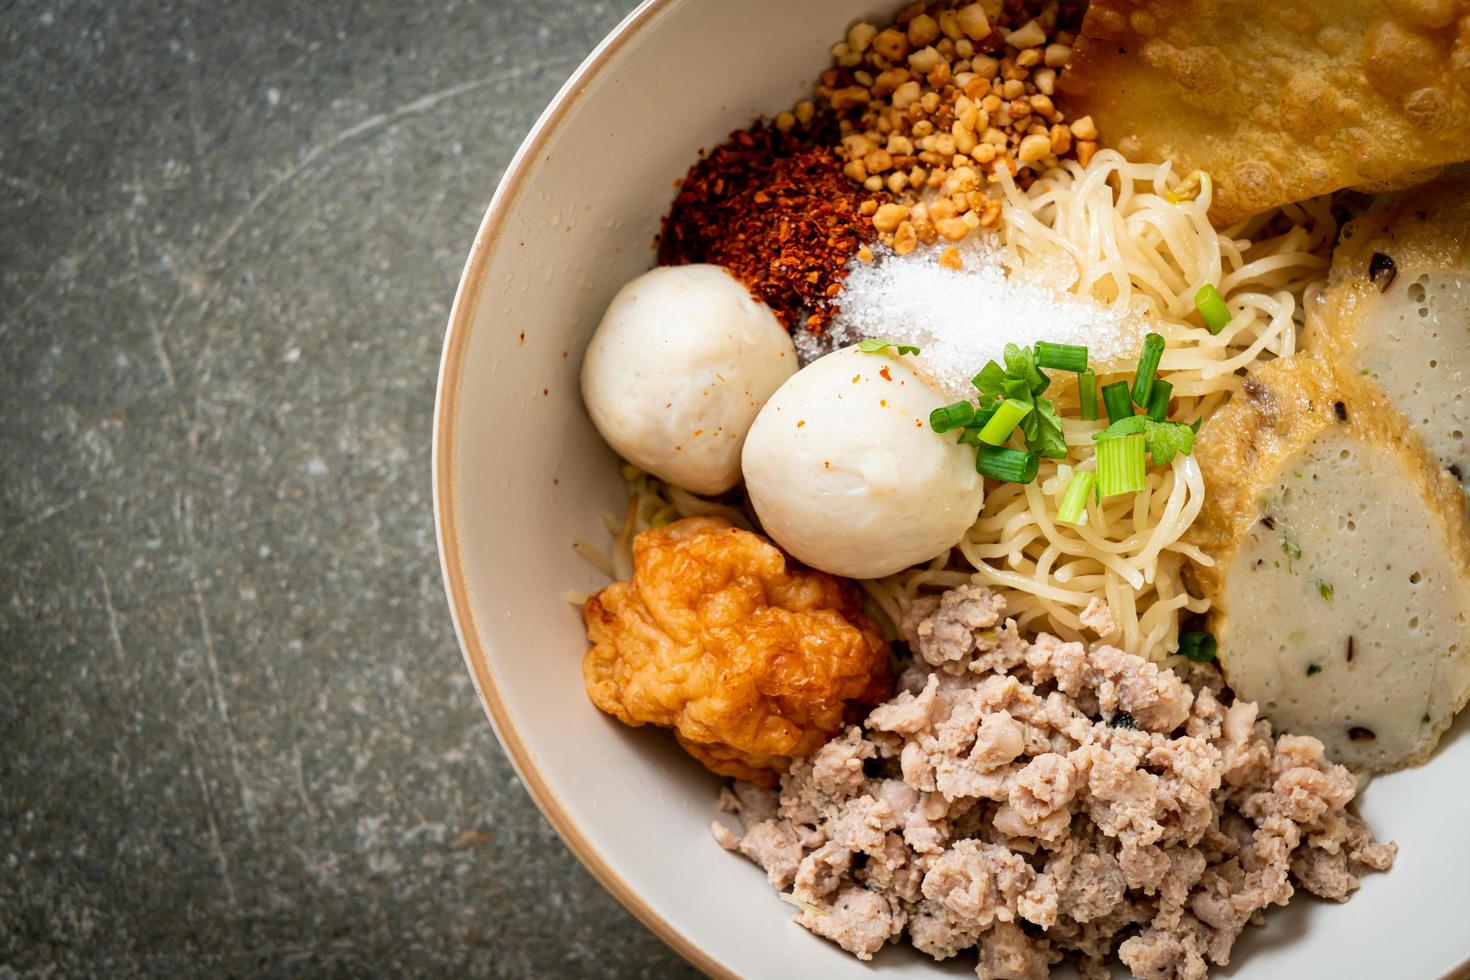 scharfe Eiernudeln mit Fischbällchen und Garnelenbällchen ohne Suppe - asiatische Küche foto